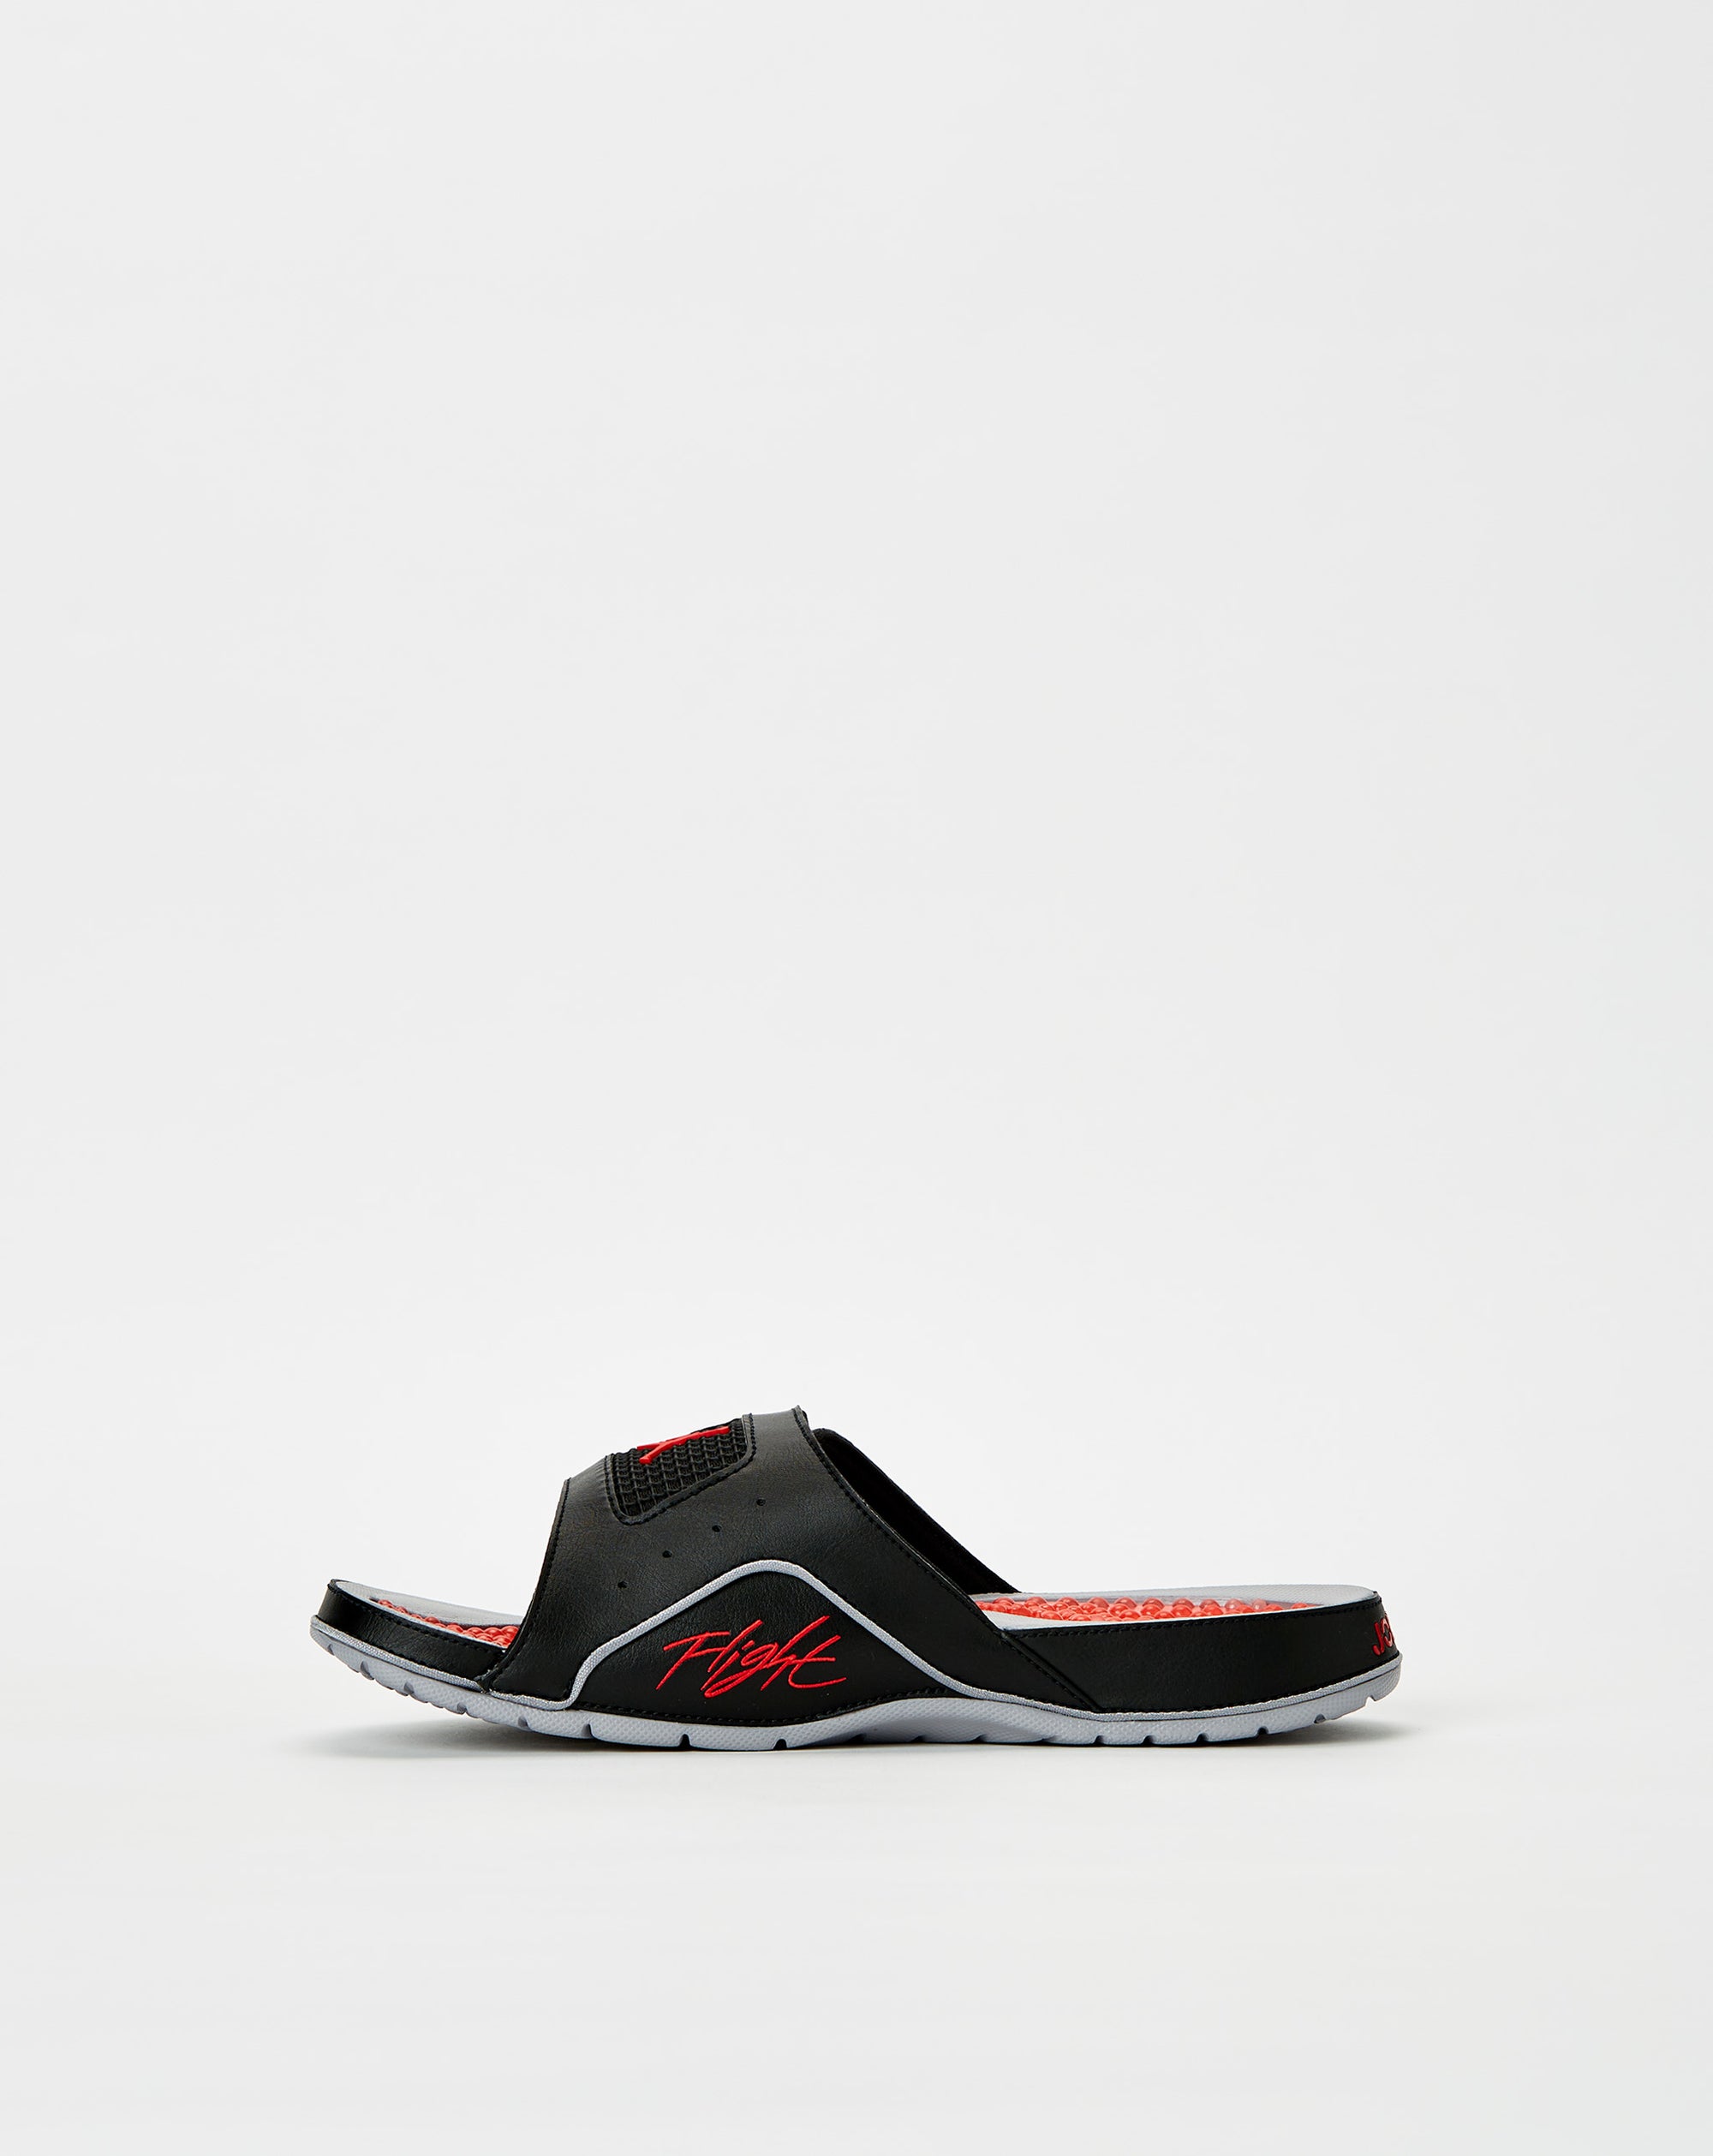 Air Jordan Jordan Hydro 4 Retro - Rule of Next Footwear